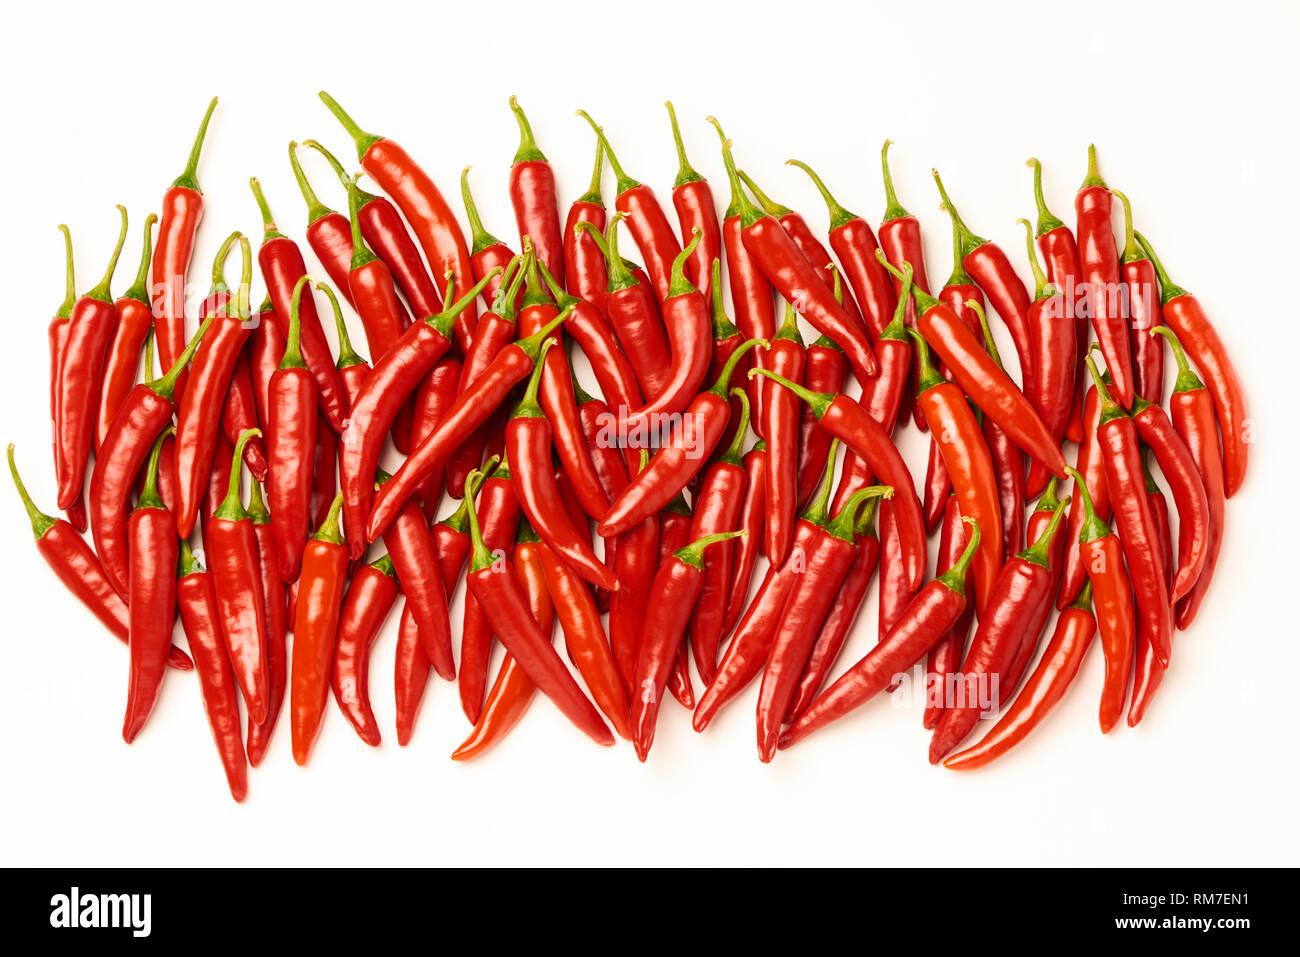 Los Chiles picantes pimientos rojos Foto de stock